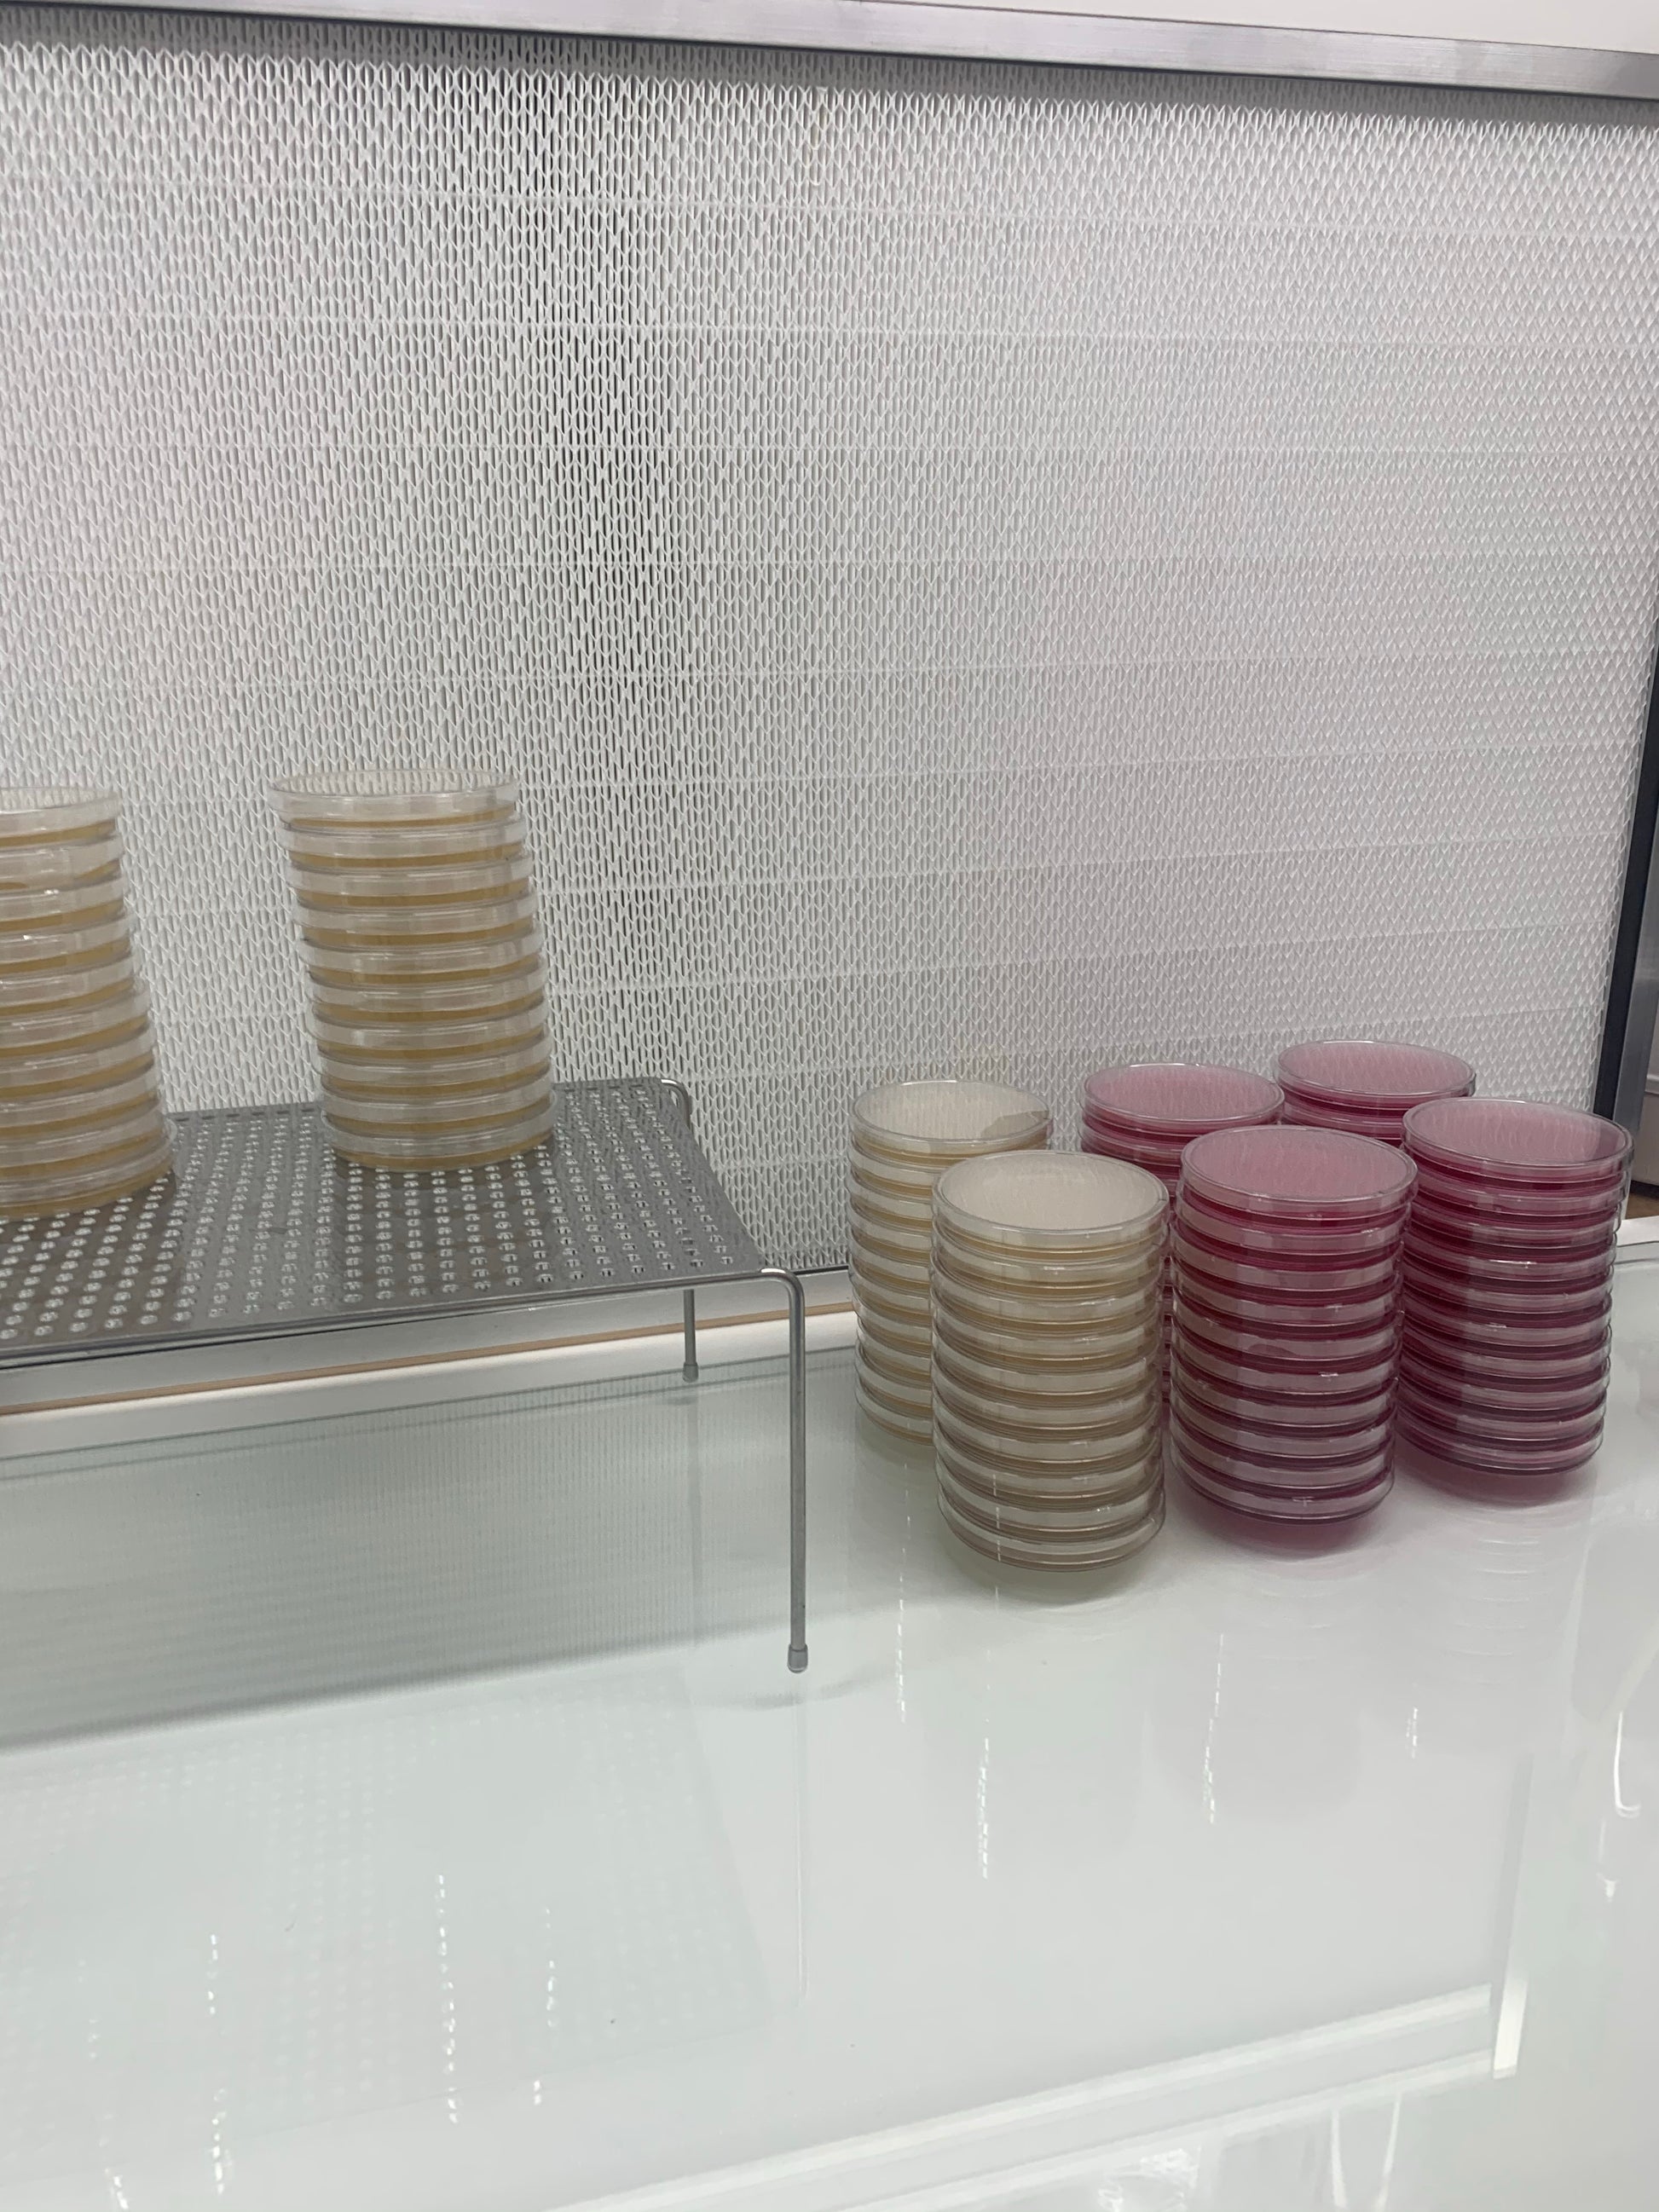 MycoPunks - 10 Light Malt Extract Agar Custom (LME) Petri Dishes for Fungal Cultures - Custom Agar